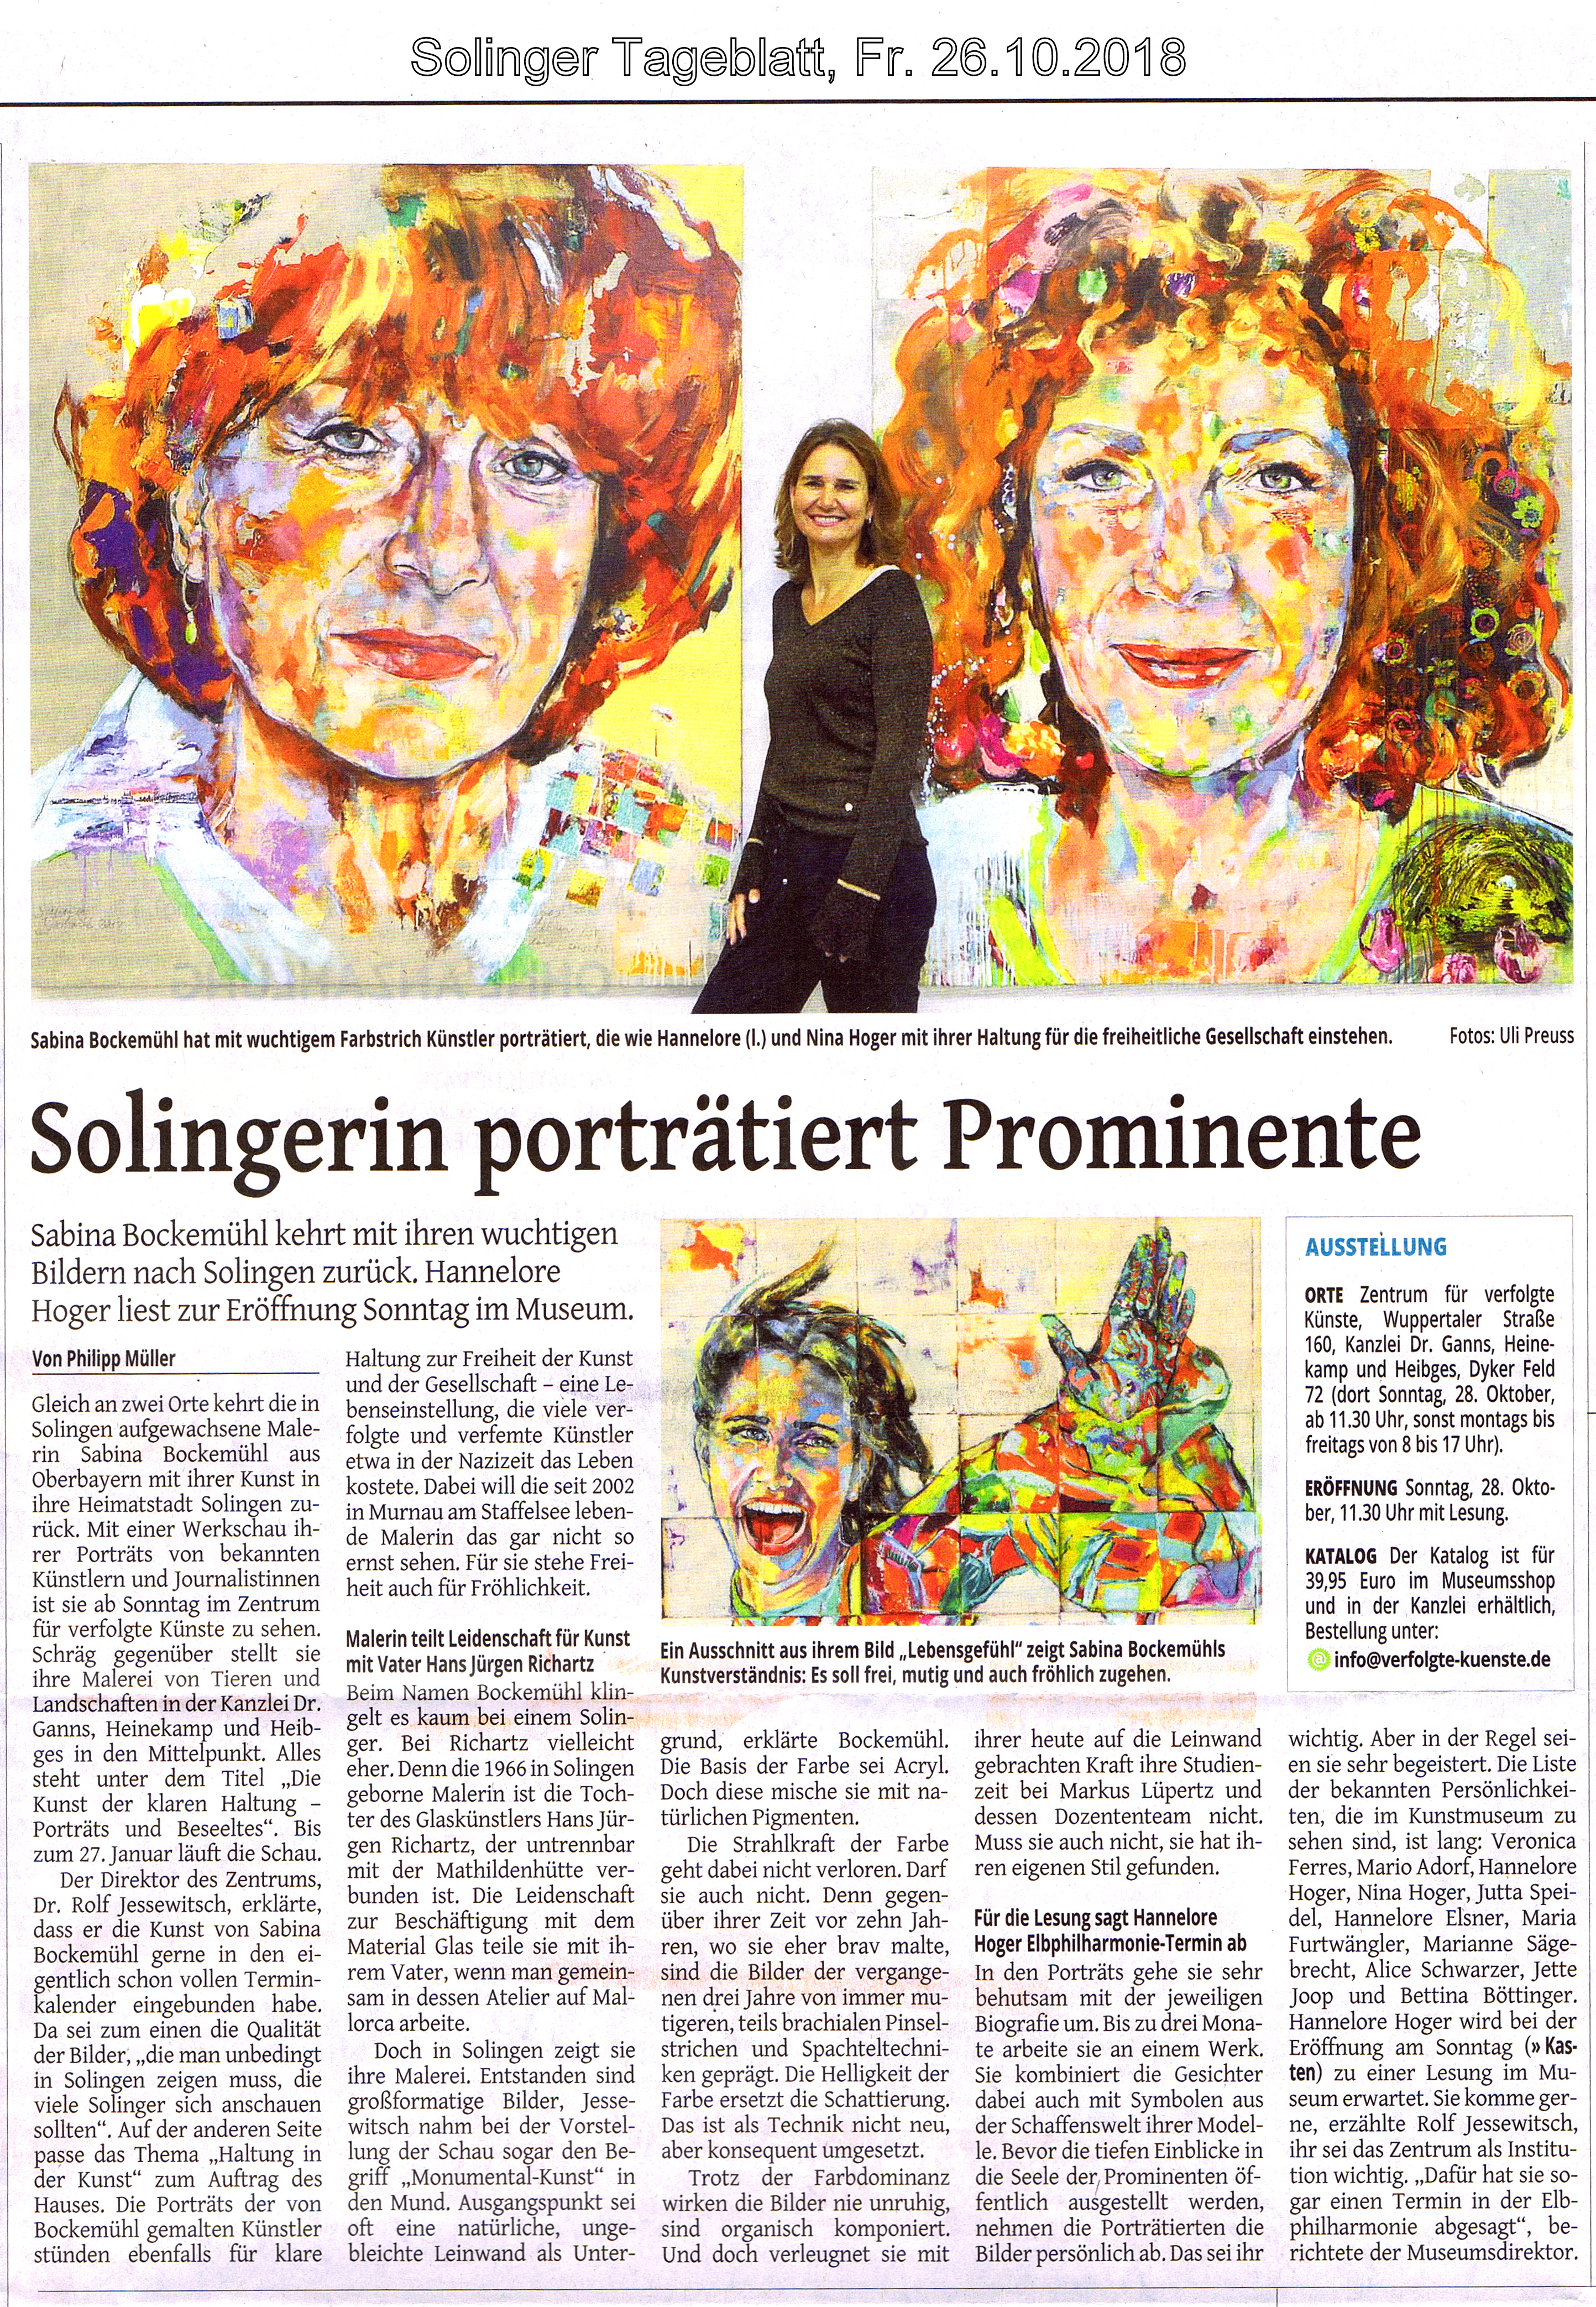 Solinger Tageblatt - Solingerin porträtiert prominente